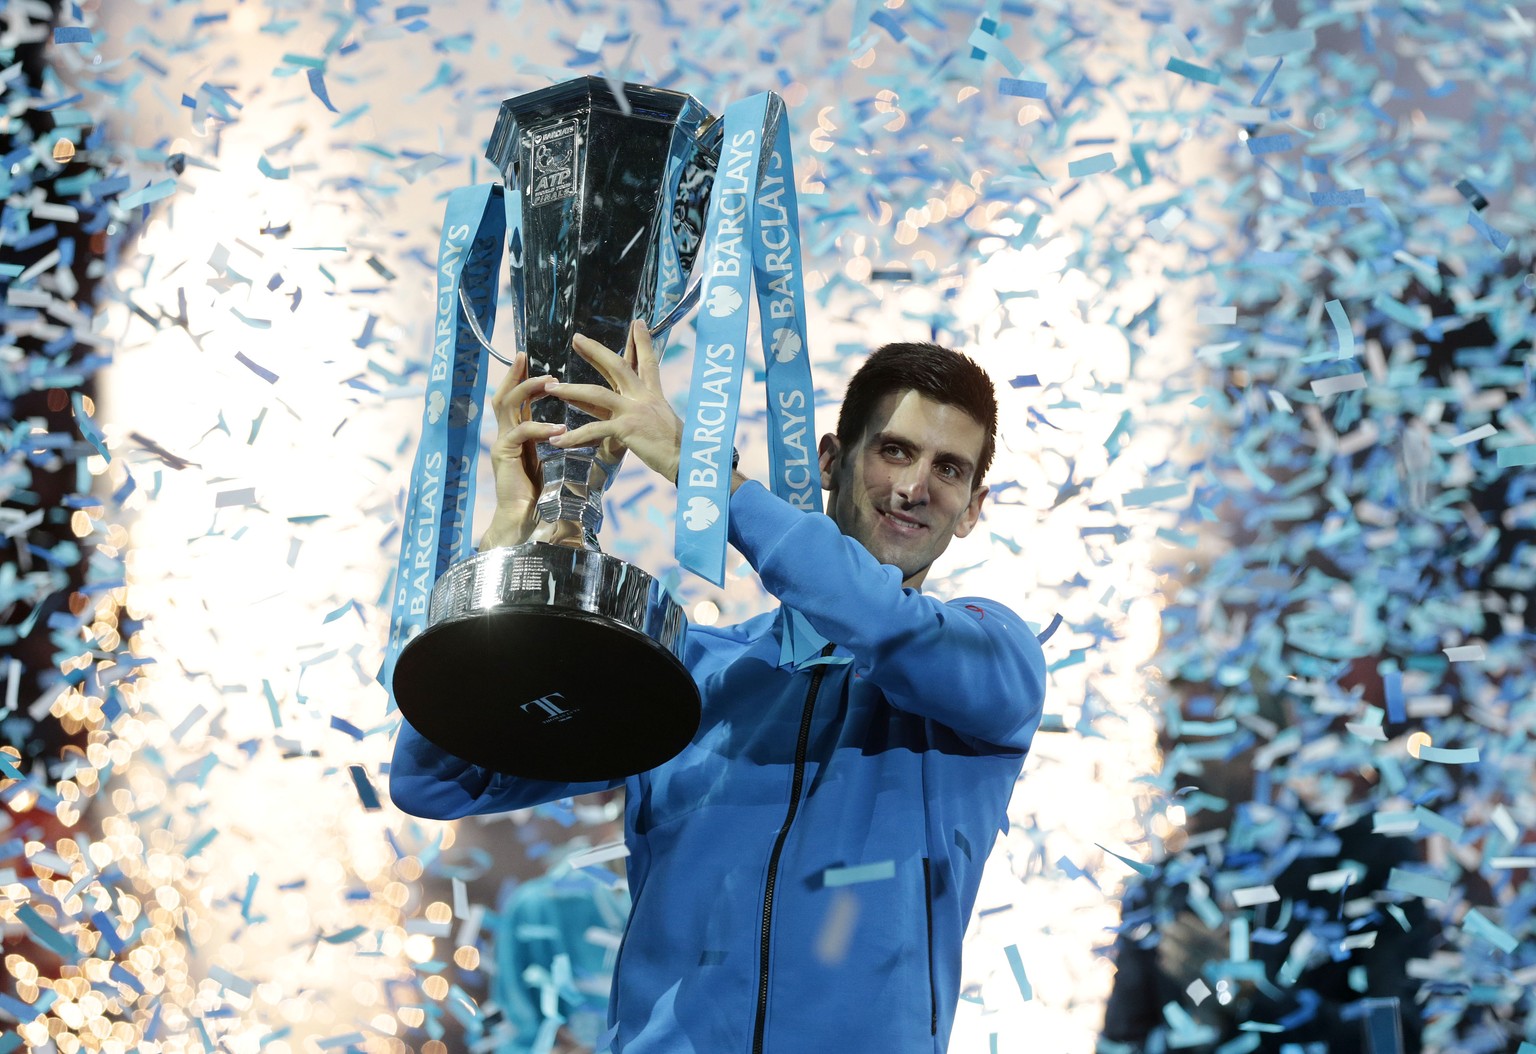 Erneut heisst der Sieger am Ende Novak Djokovic.